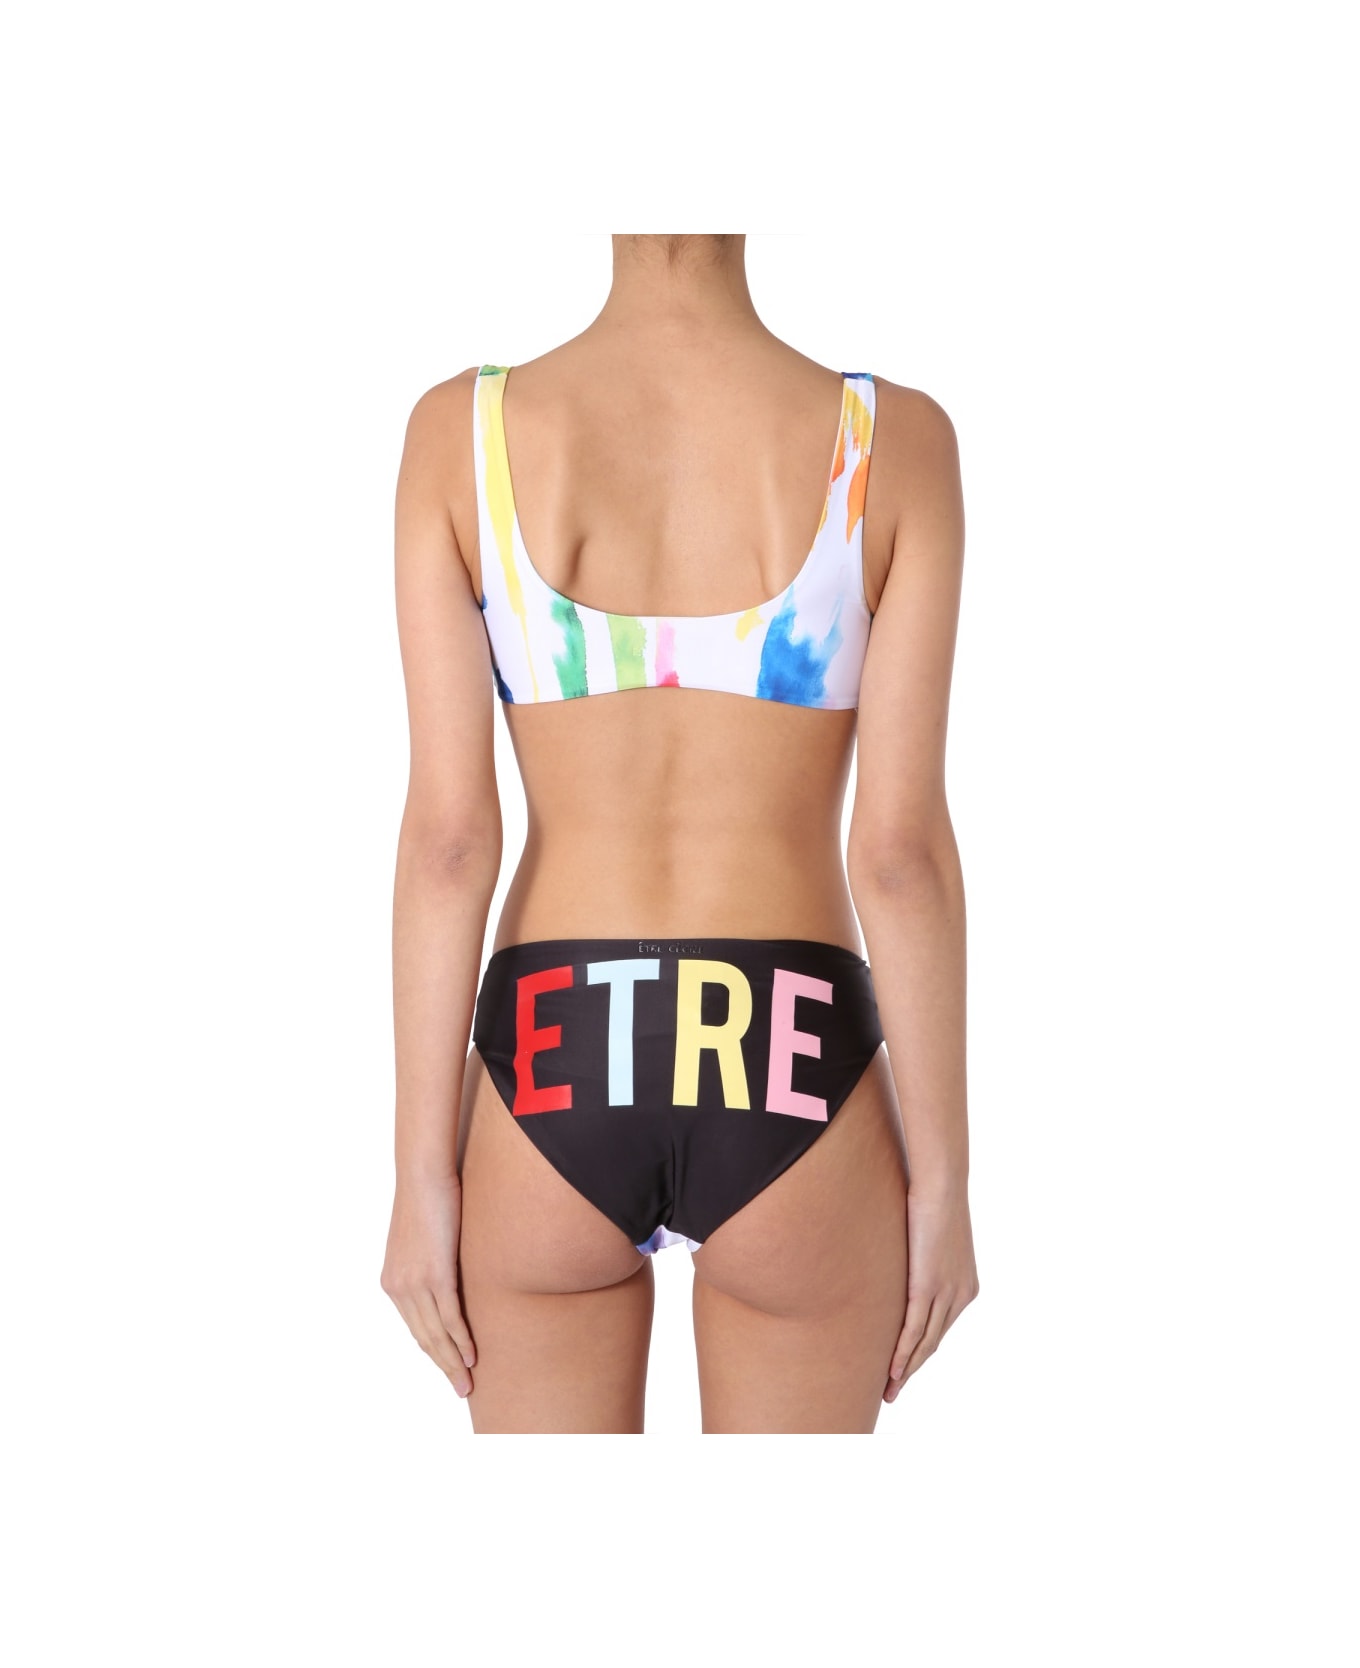 Etre Cecile Slip Bikini Bottom - MULTICOLOUR